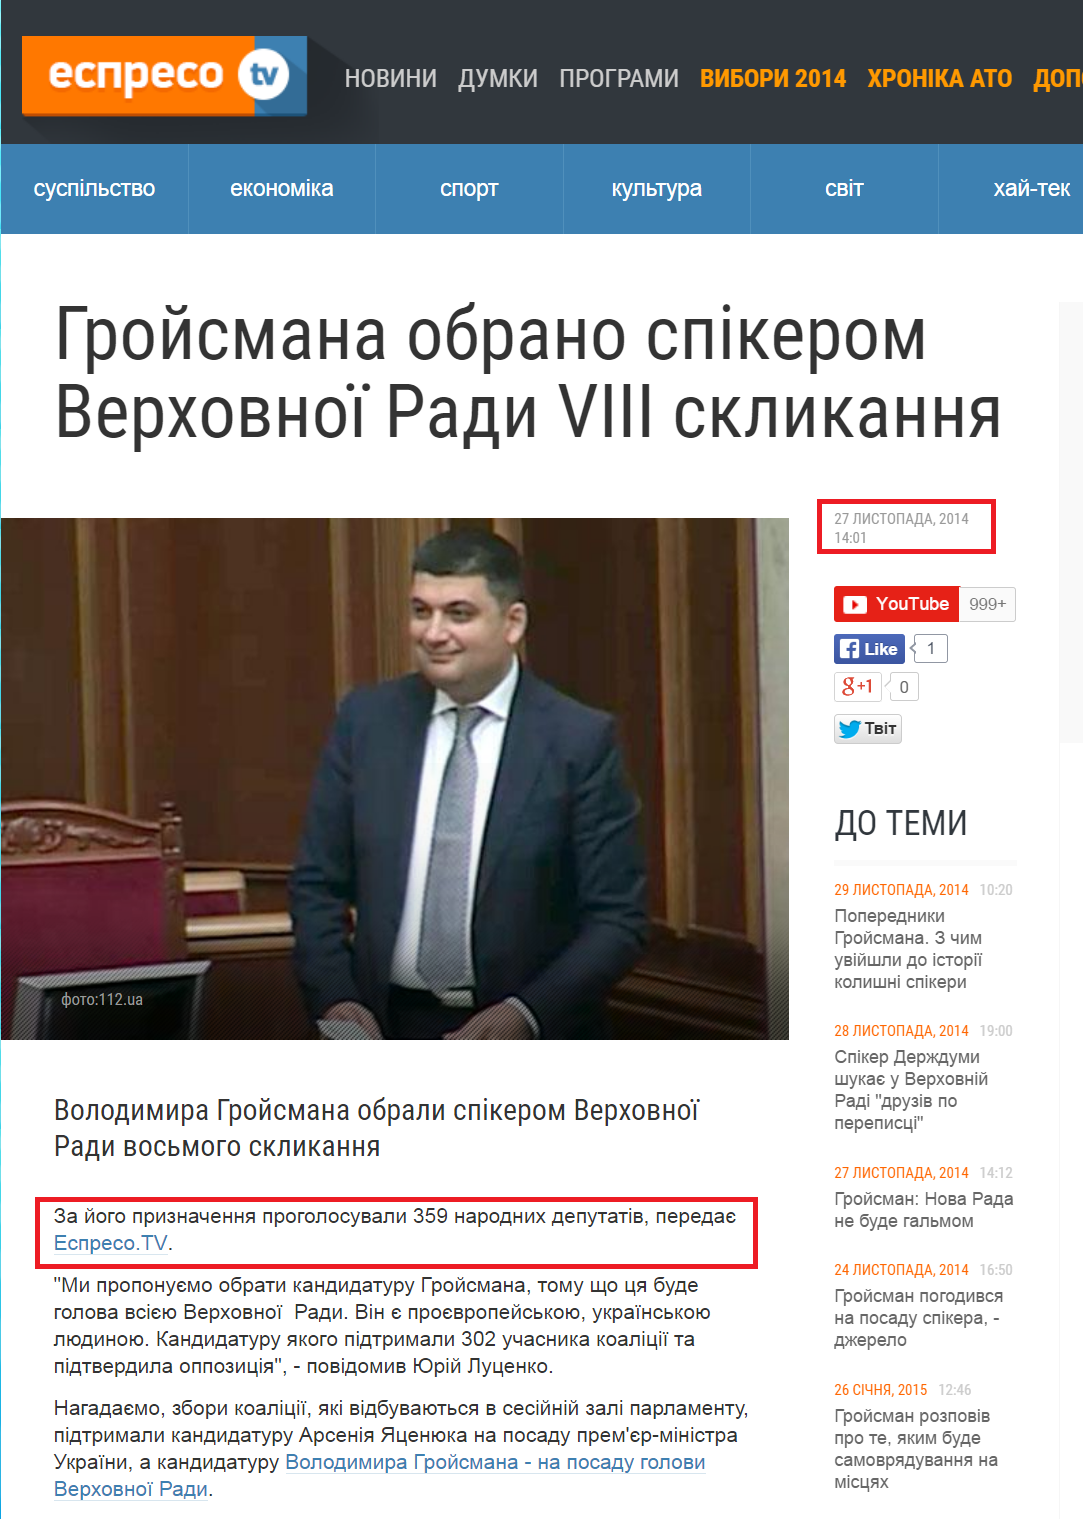 http://espreso.tv/news/2014/11/27/hroysmana_obrano_spikerom_verkhovnoyi_rady_vosmoho_sklykannya